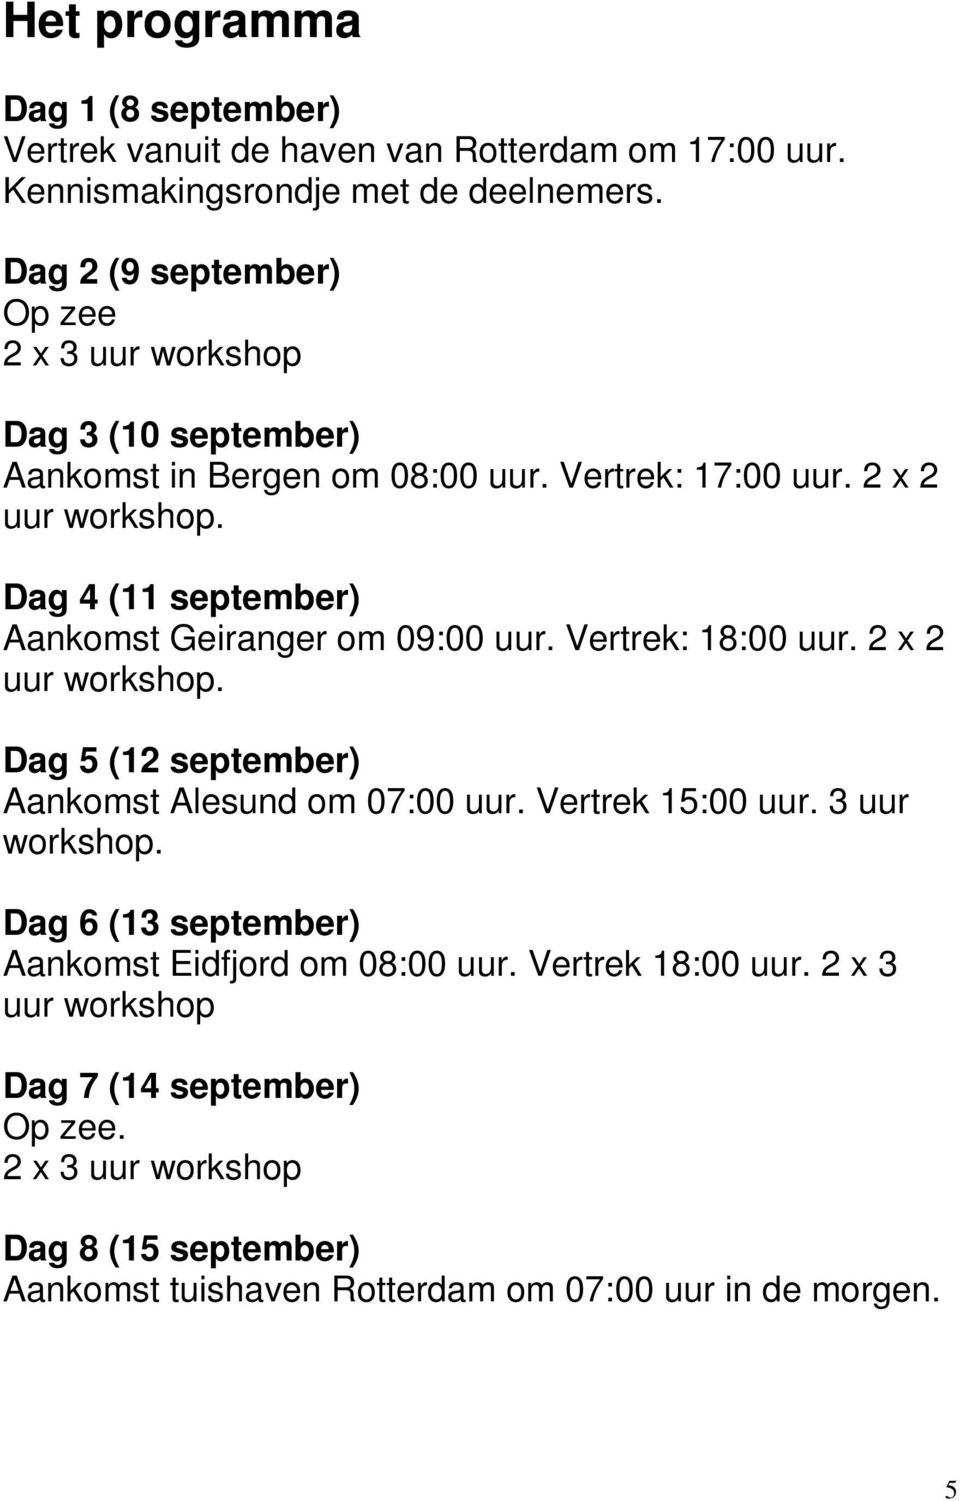 Dag 4 (11 september) Aankomst Geiranger om 09:00 uur. Vertrek: 18:00 uur. 2 x 2 uur workshop. Dag 5 (12 september) Aankomst Alesund om 07:00 uur. Vertrek 15:00 uur.